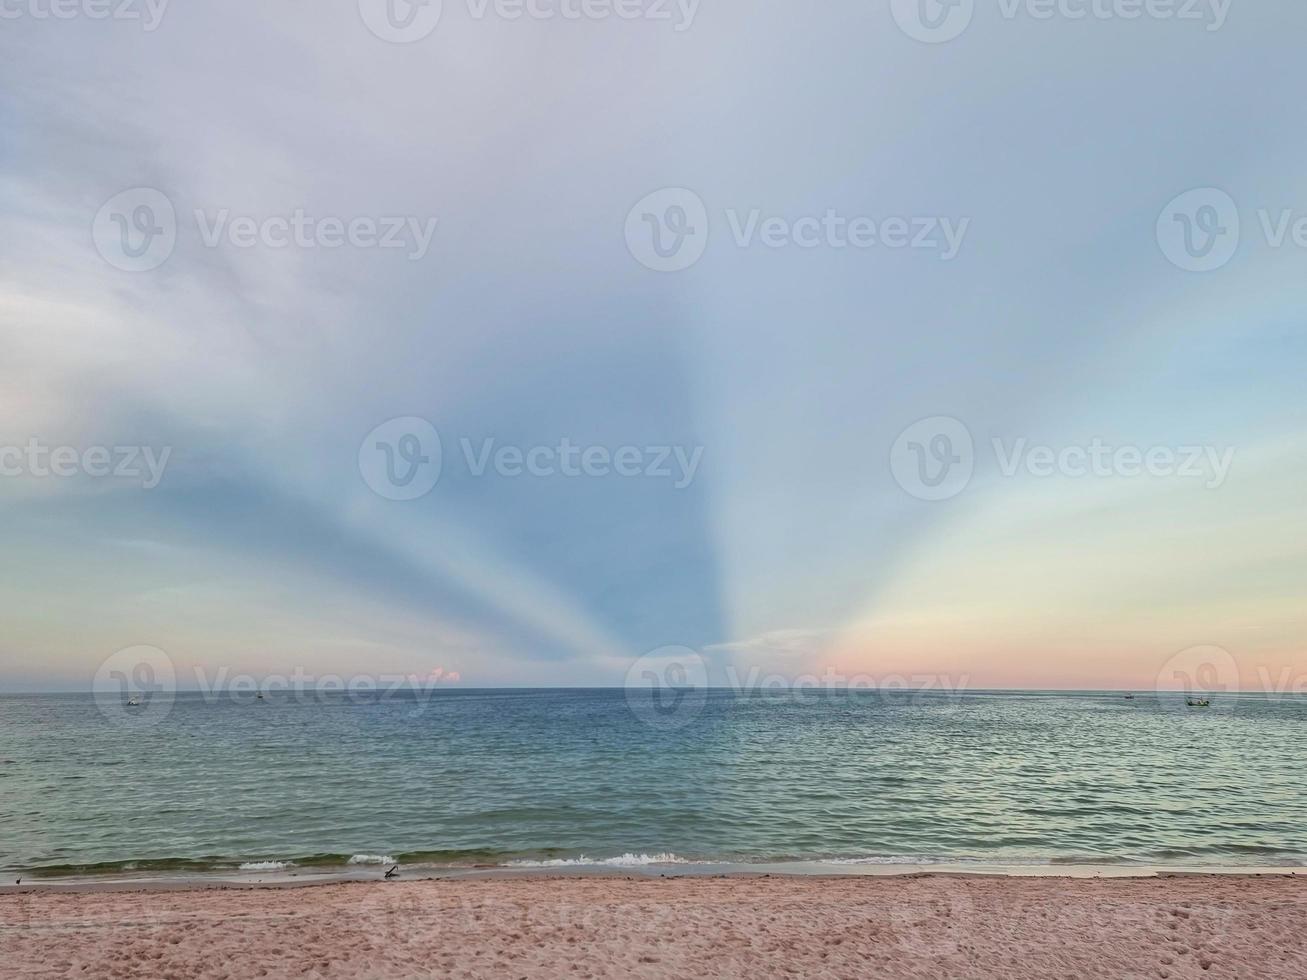 milagro sol luz puesta de sol triple forma en el cielo. playa de arena dorada cielo azul claro en tailandia foto